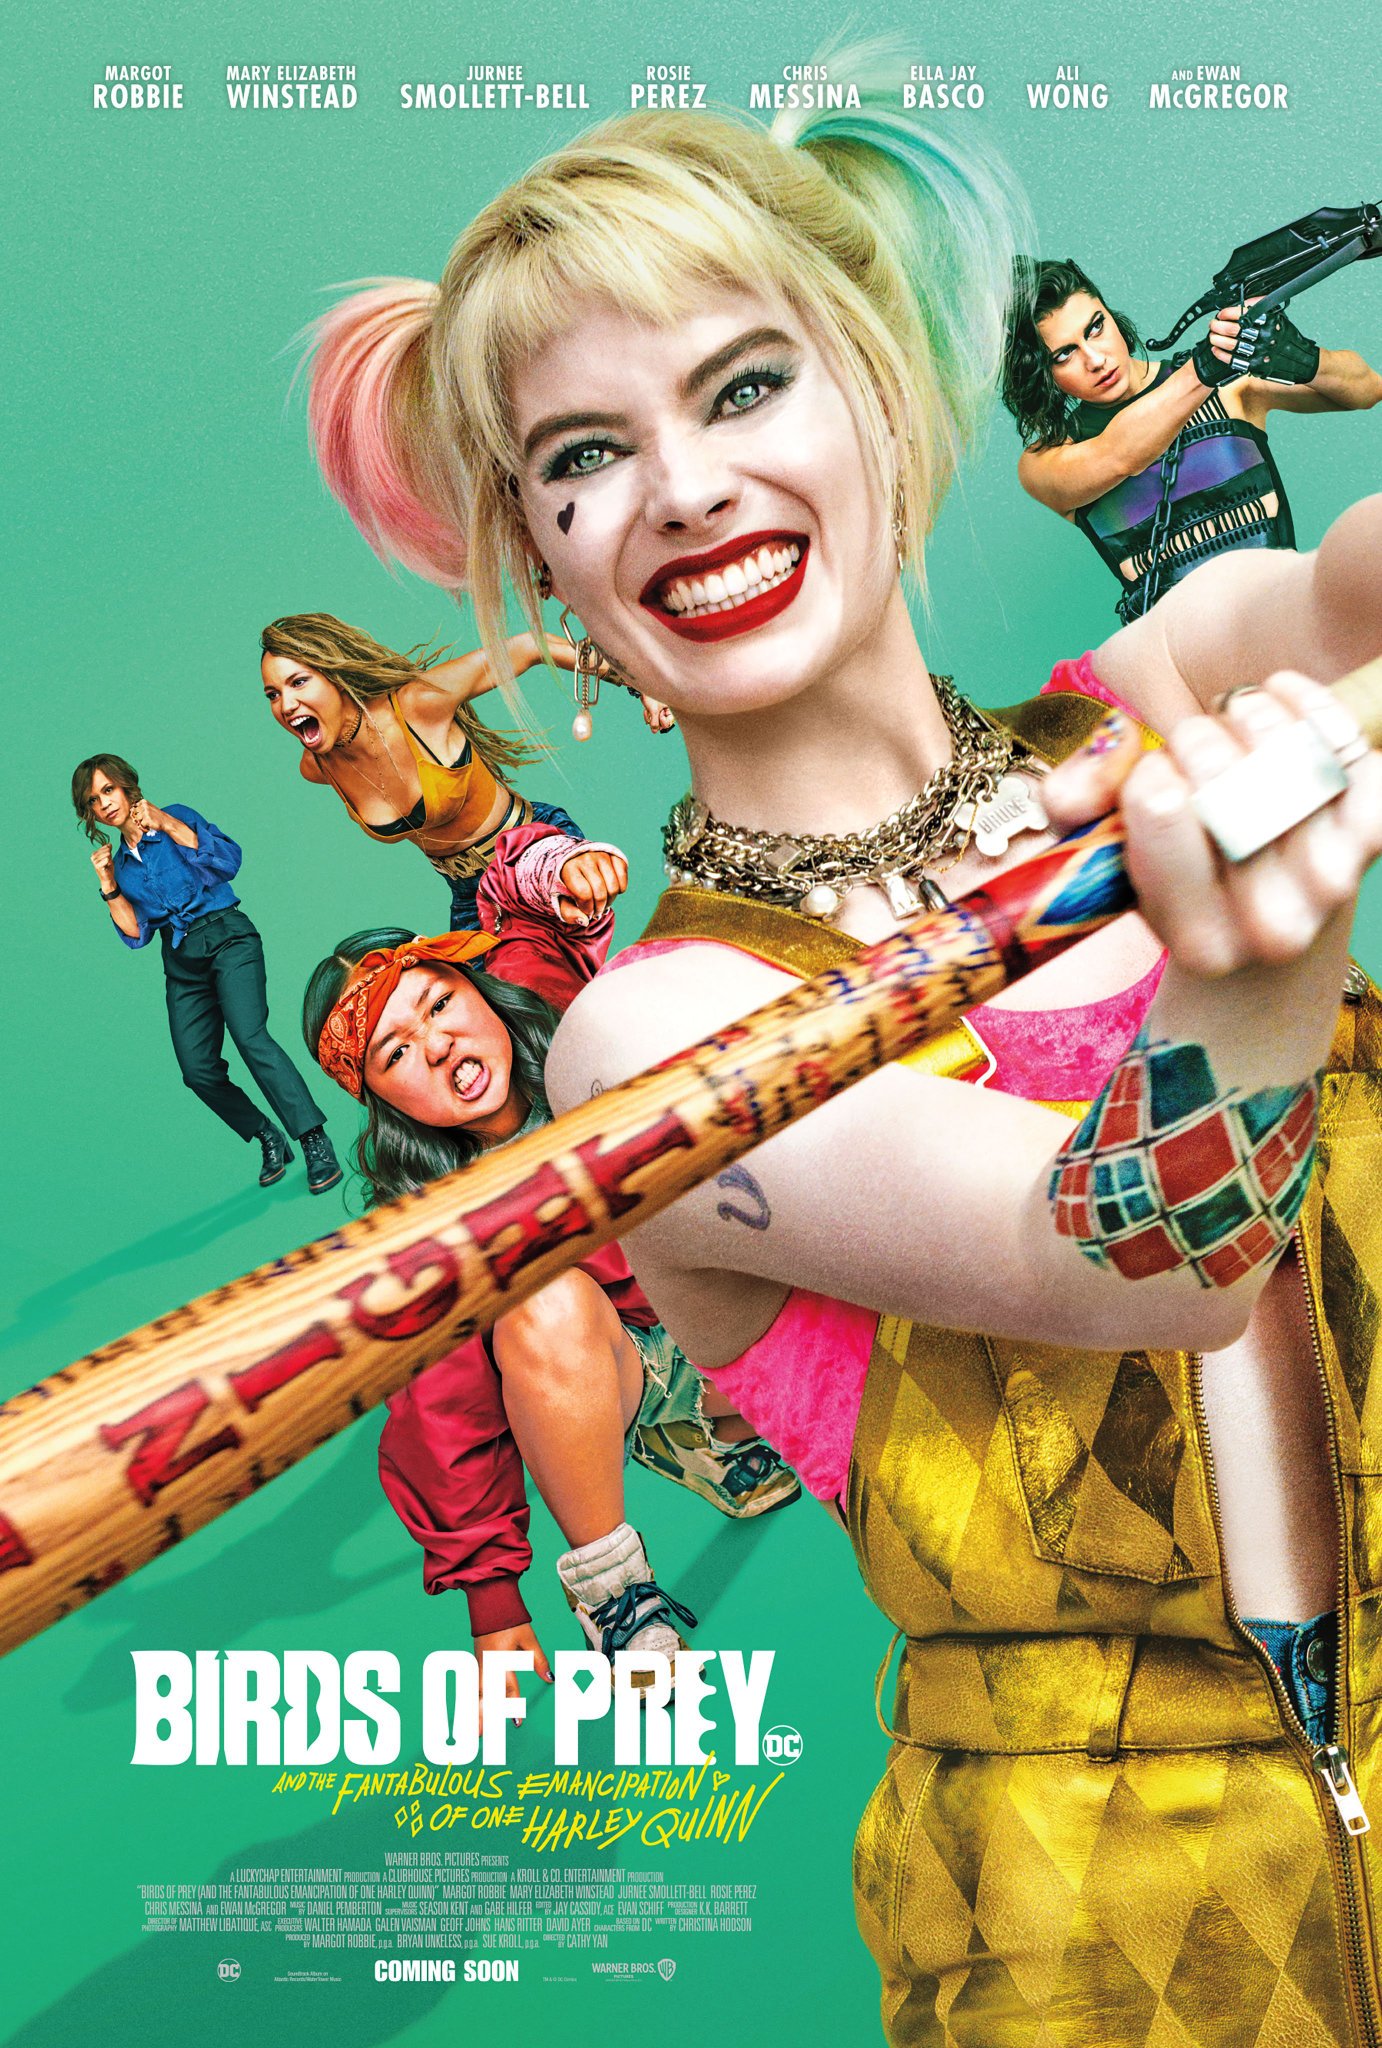 Birds of Prey: The trailer has been released